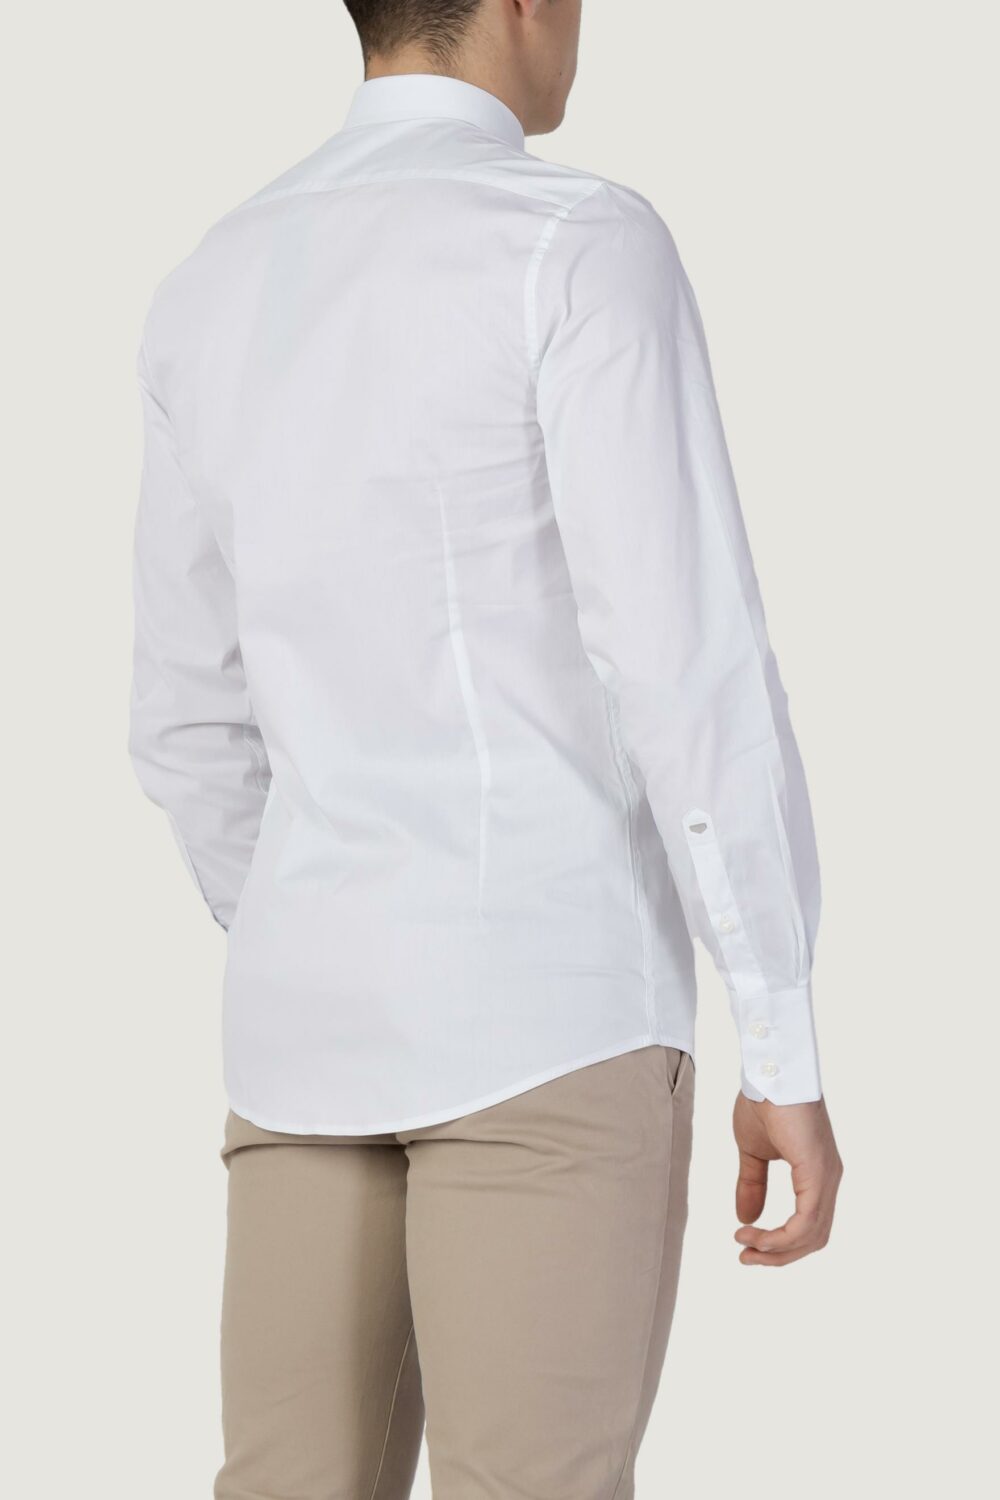 Camicia manica lunga Antony Morato MILANO Bianco - Foto 3